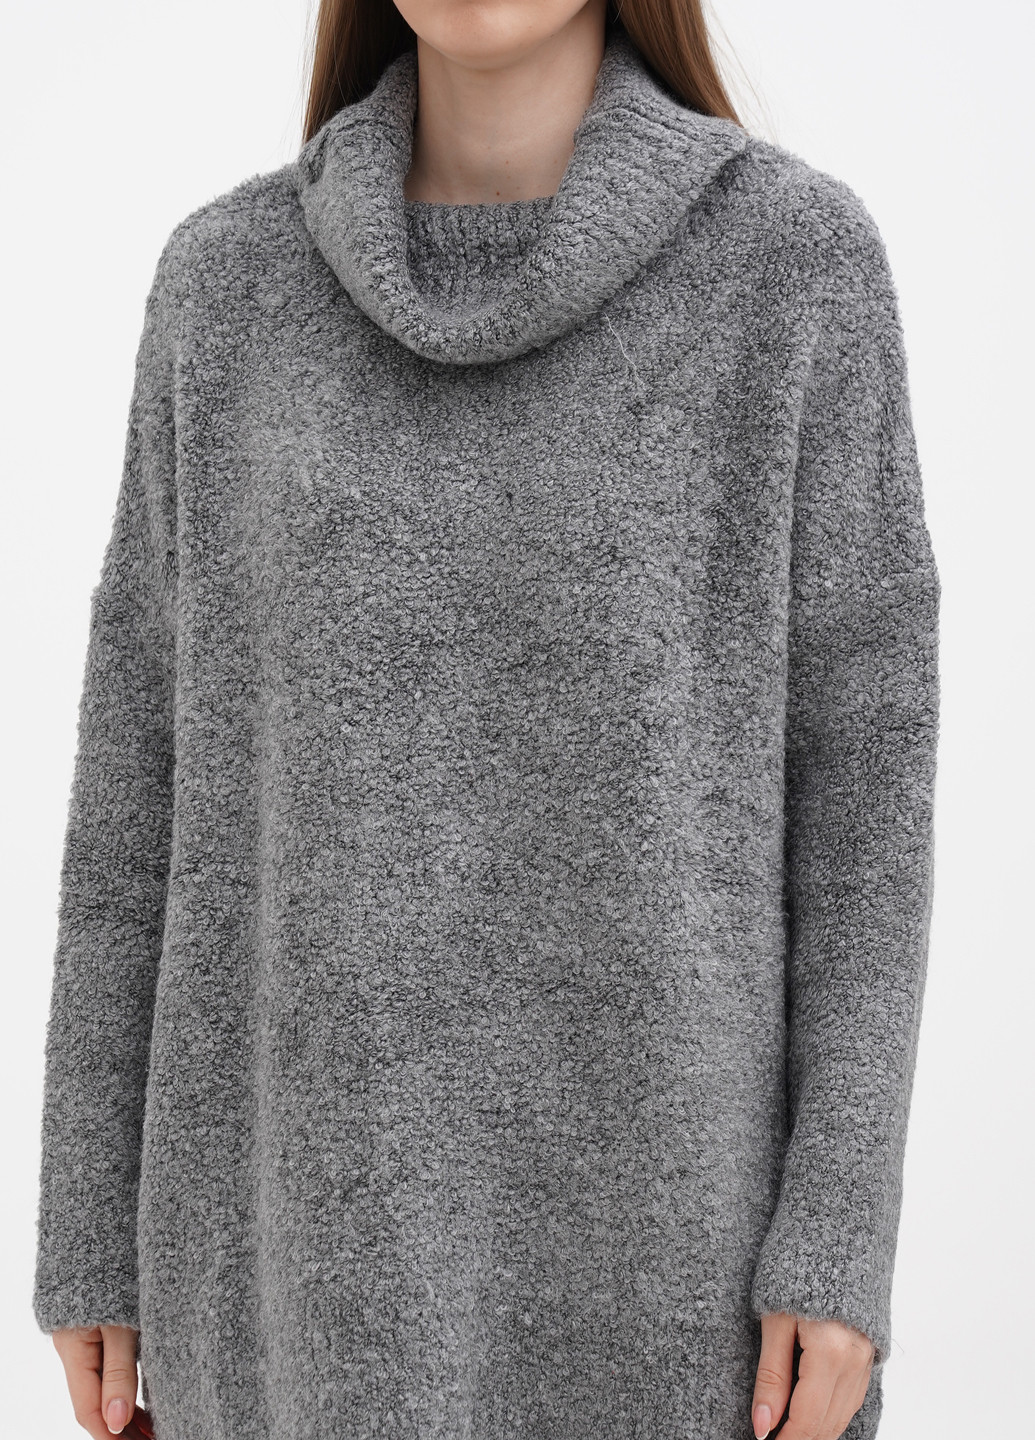 Серый зимний светр Terranova